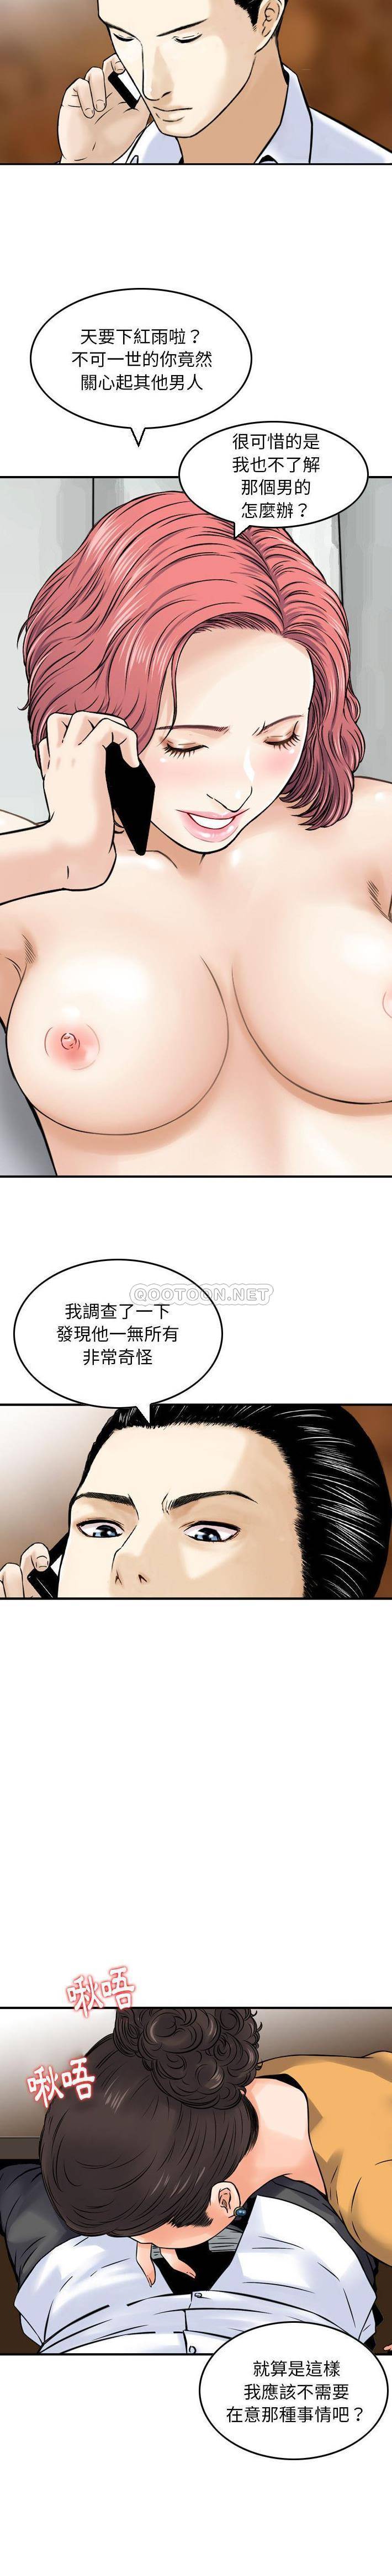 韩国污漫画 金錢的魅力 第12话 4